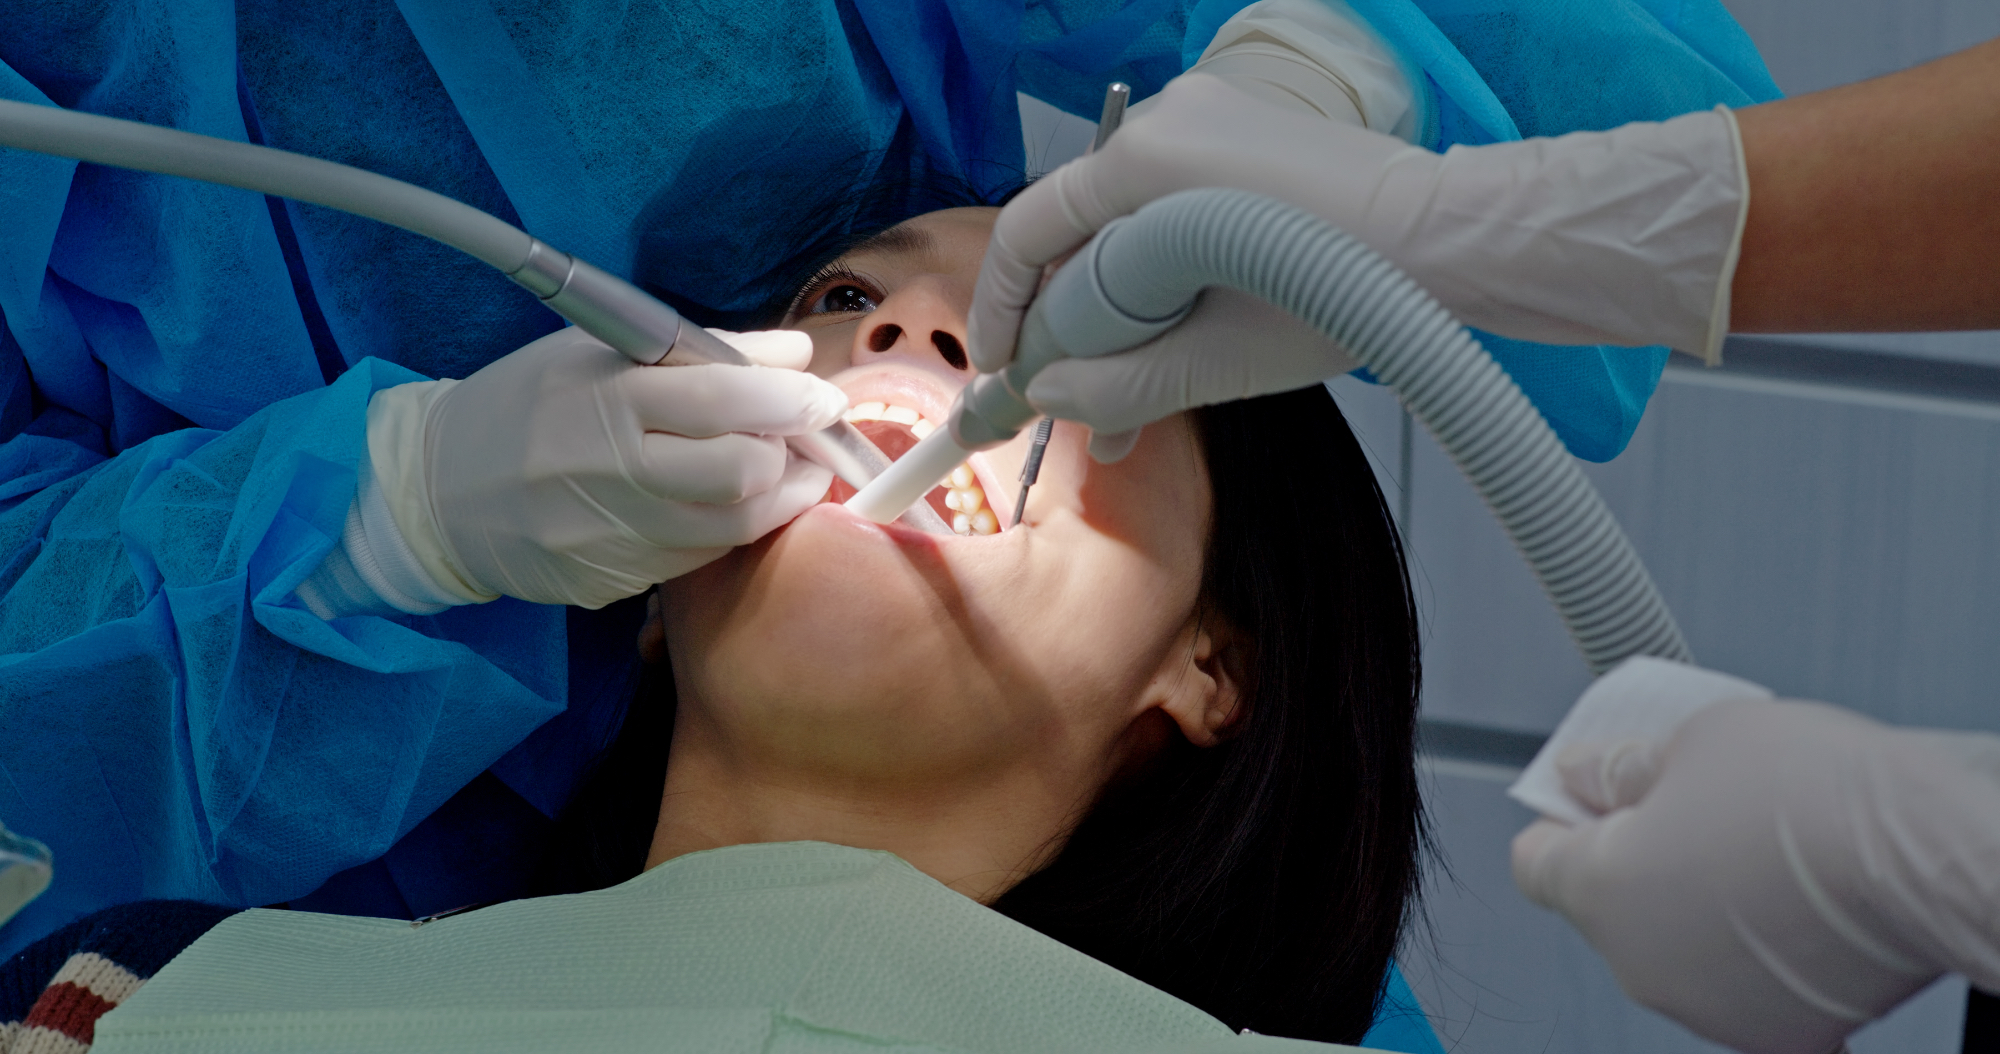 Sodelavka in zobna kirurgija, ki jo ima naslednji teden